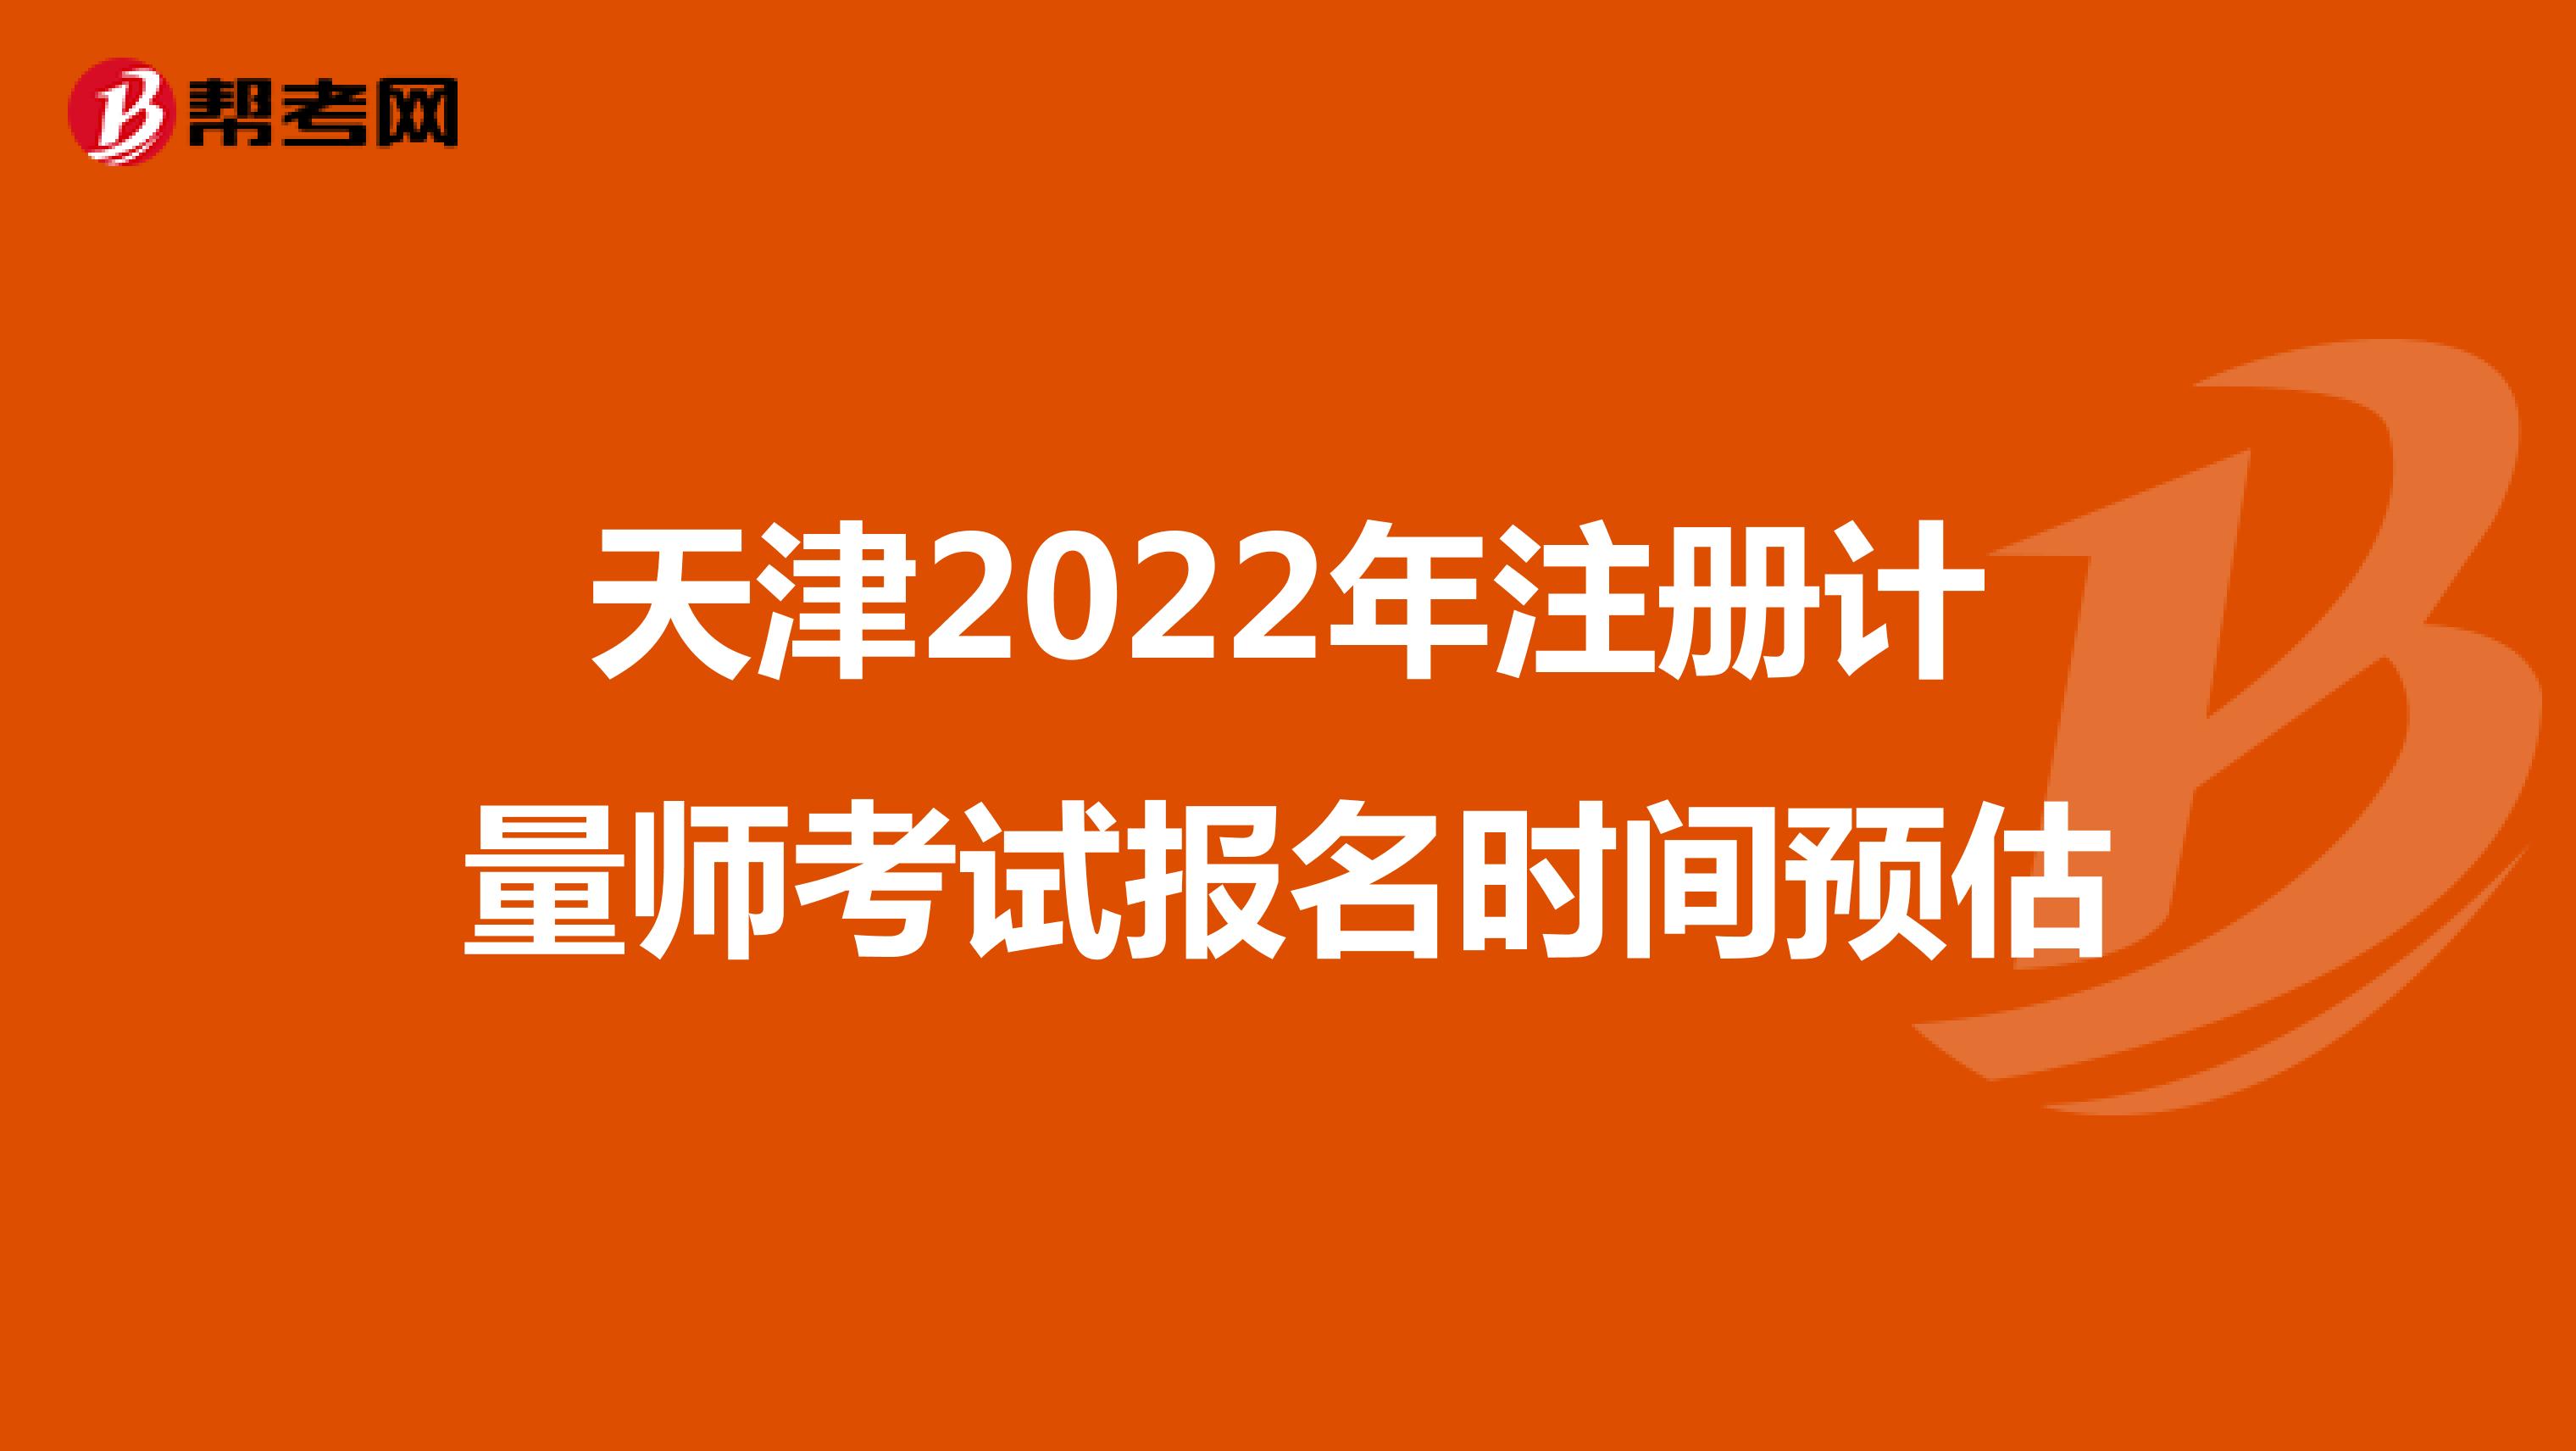 天津2022年注册计量师考试报名时间预估